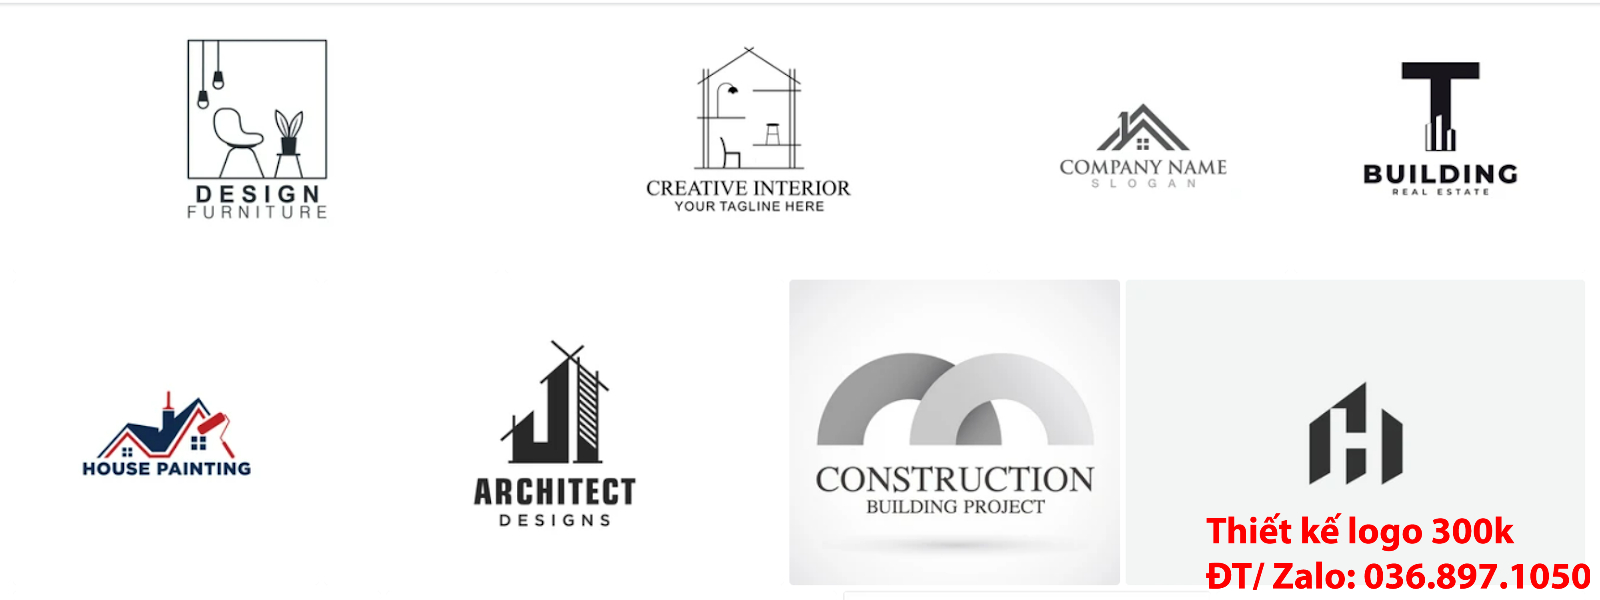 Dịch vụ tạo mẫu logo công ty kiến trúc đẹp miễn phí online tại Sài Gòn